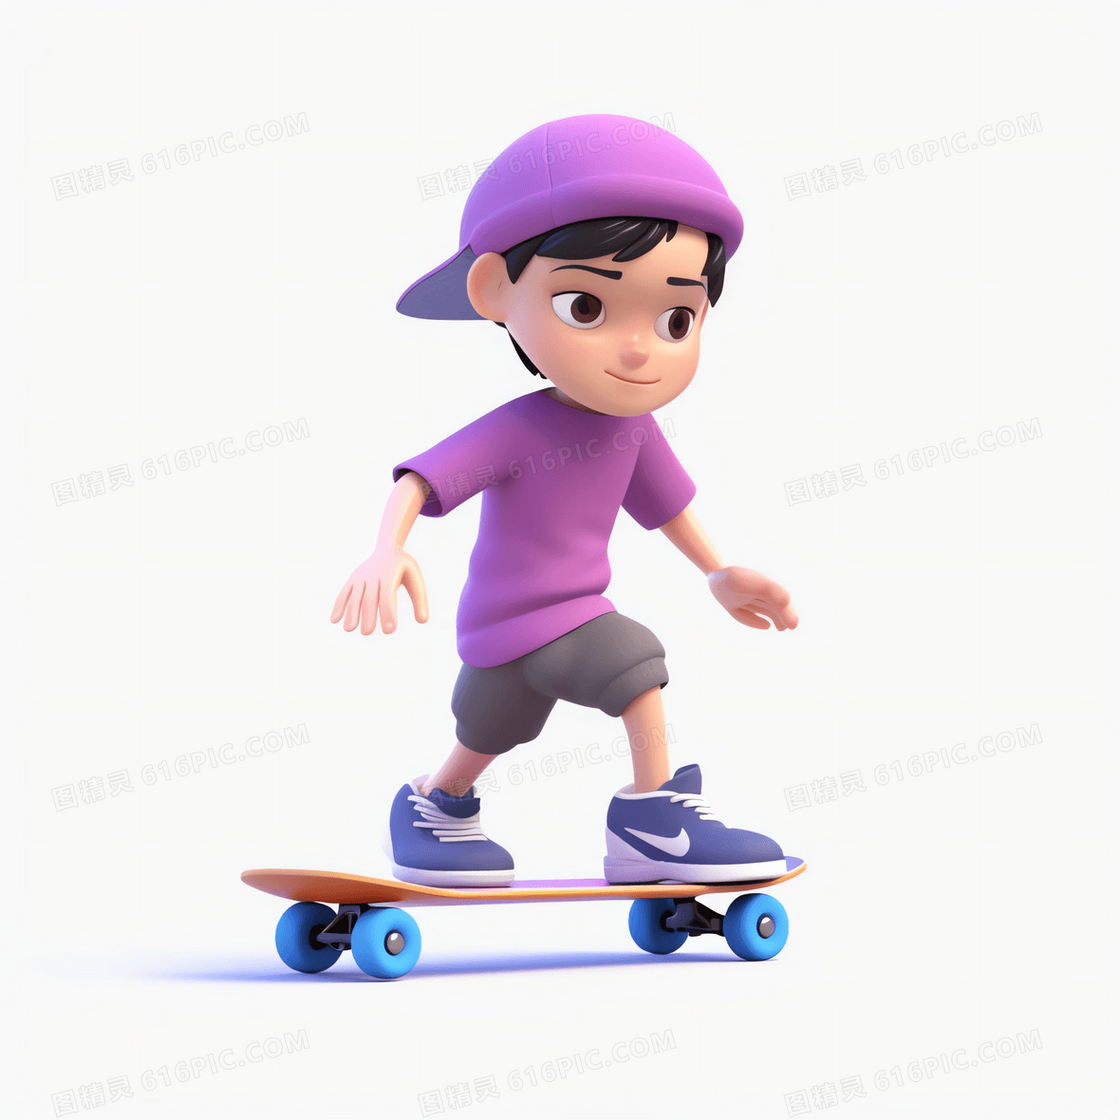 反戴紫色棒球帽玩滑板的可爱男孩3D模型